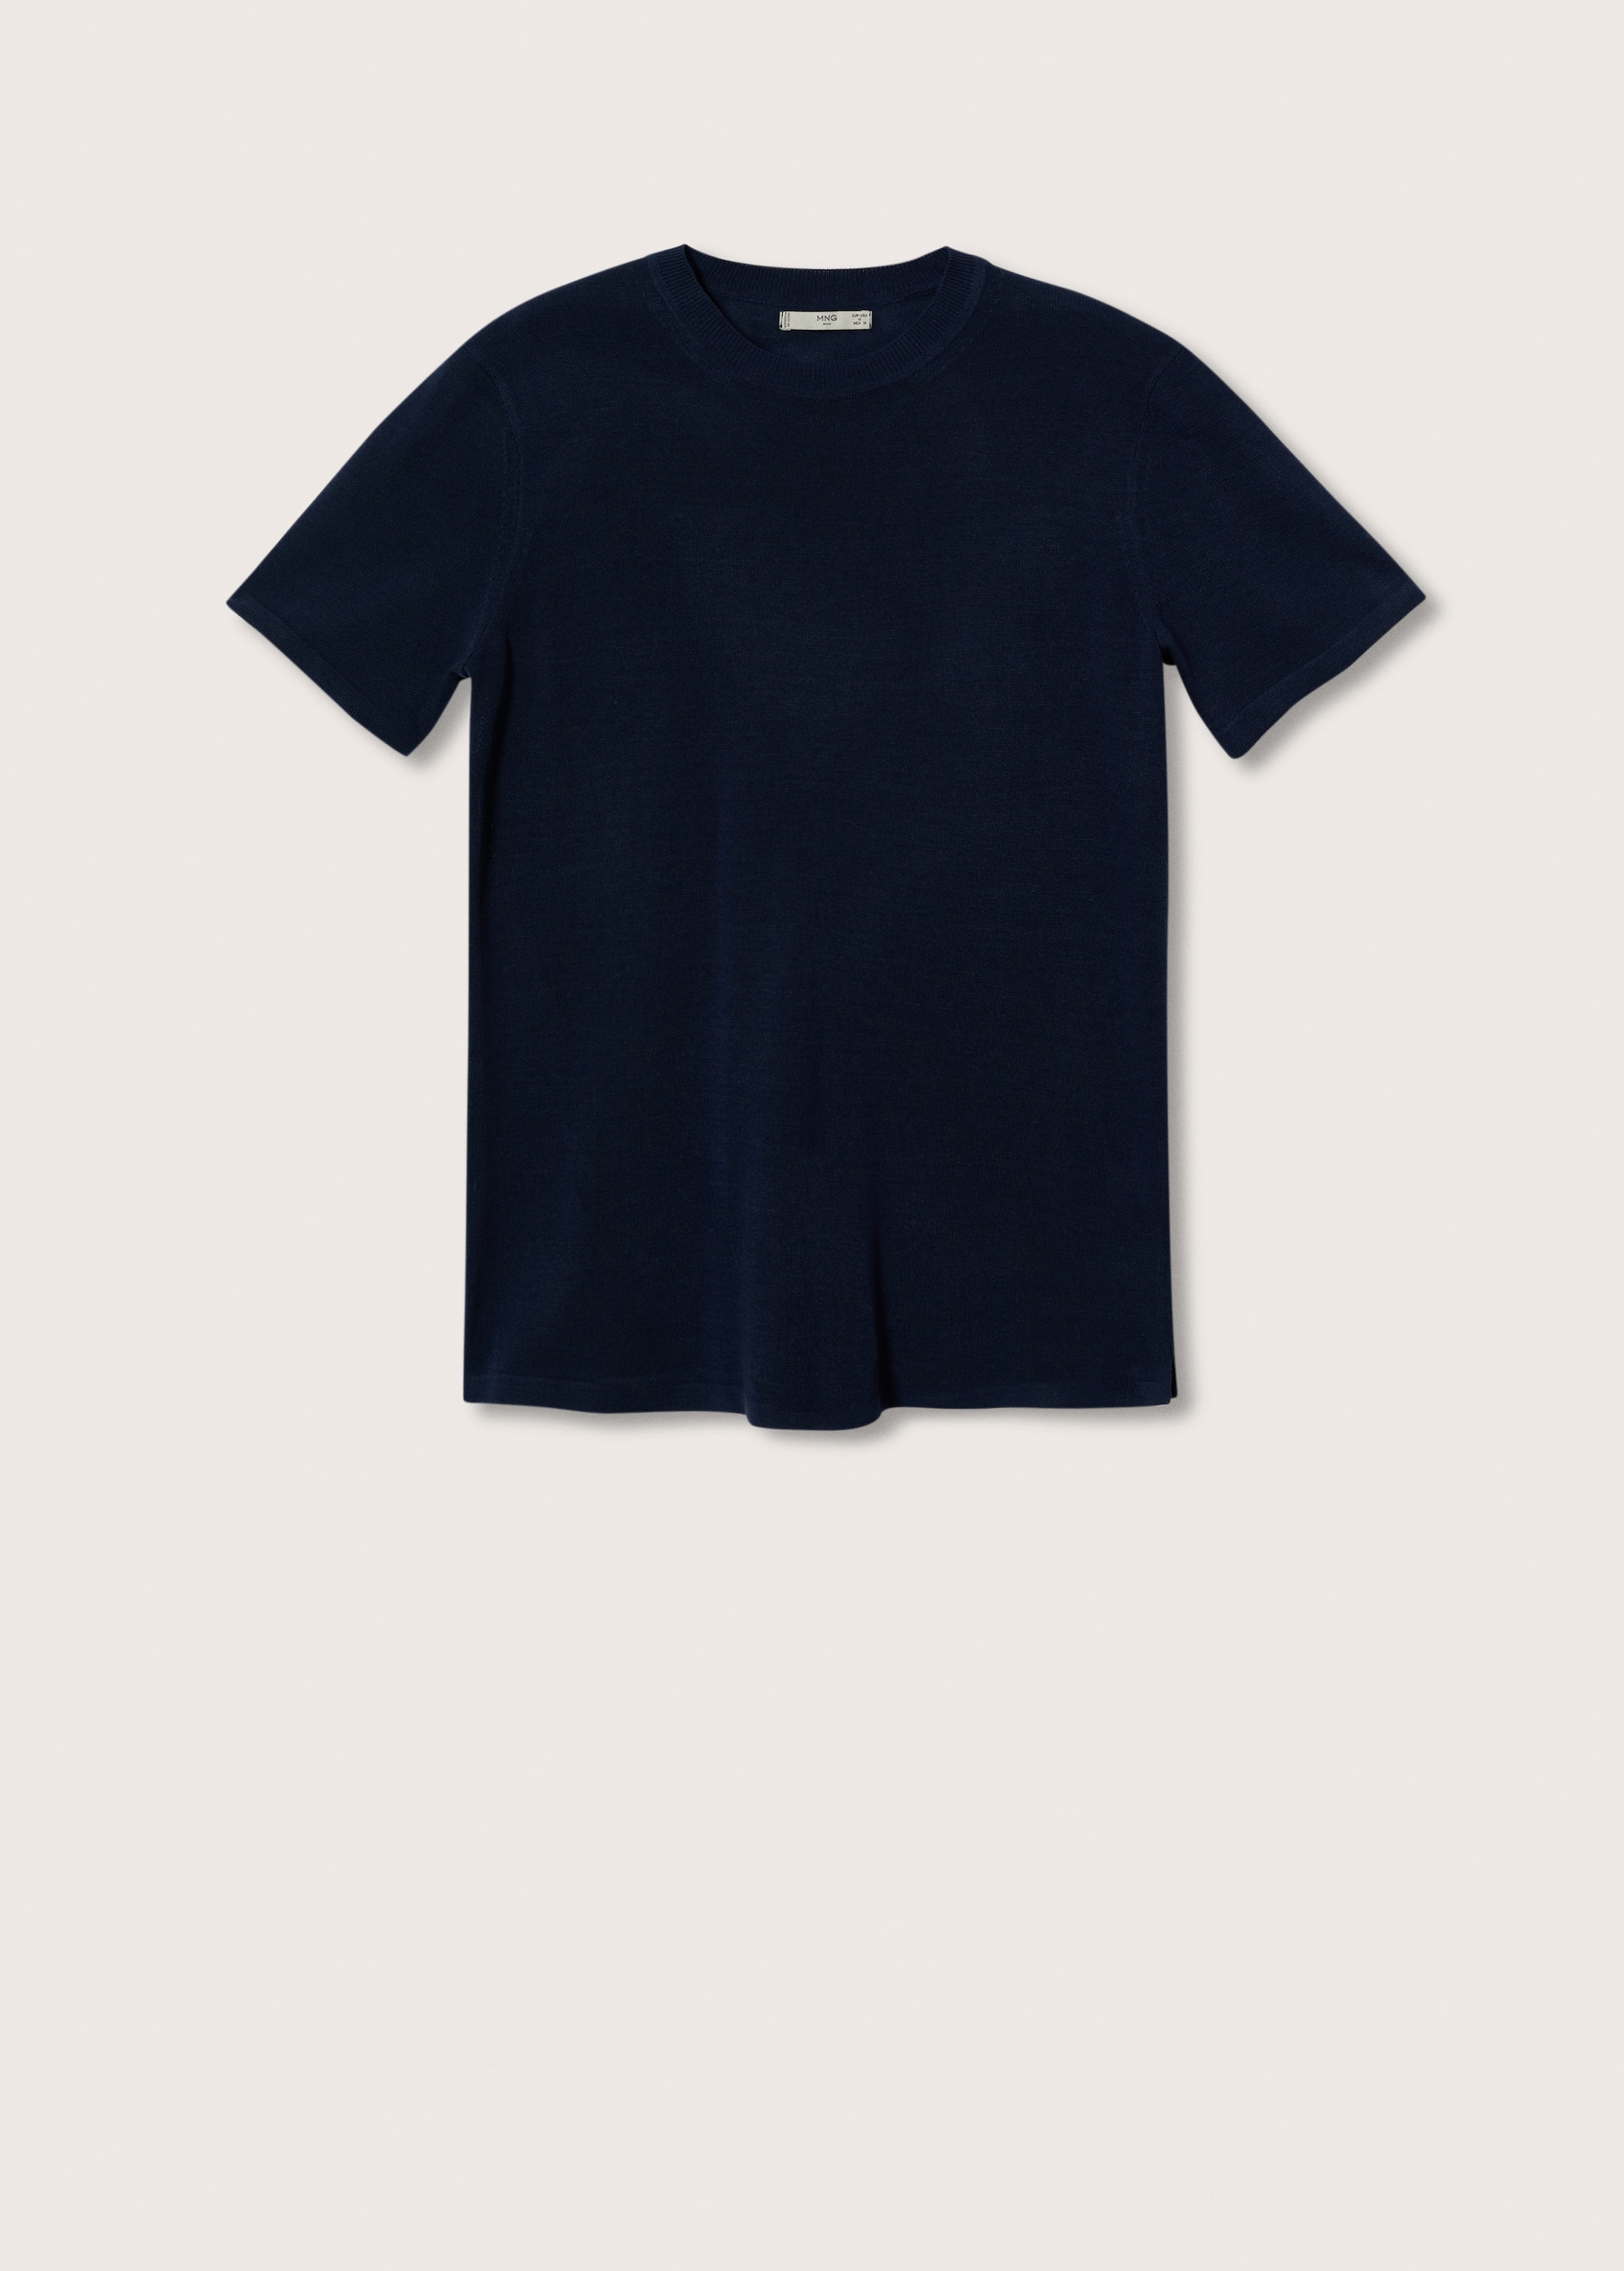 Camiseta punto lino - Artículo sin modelo